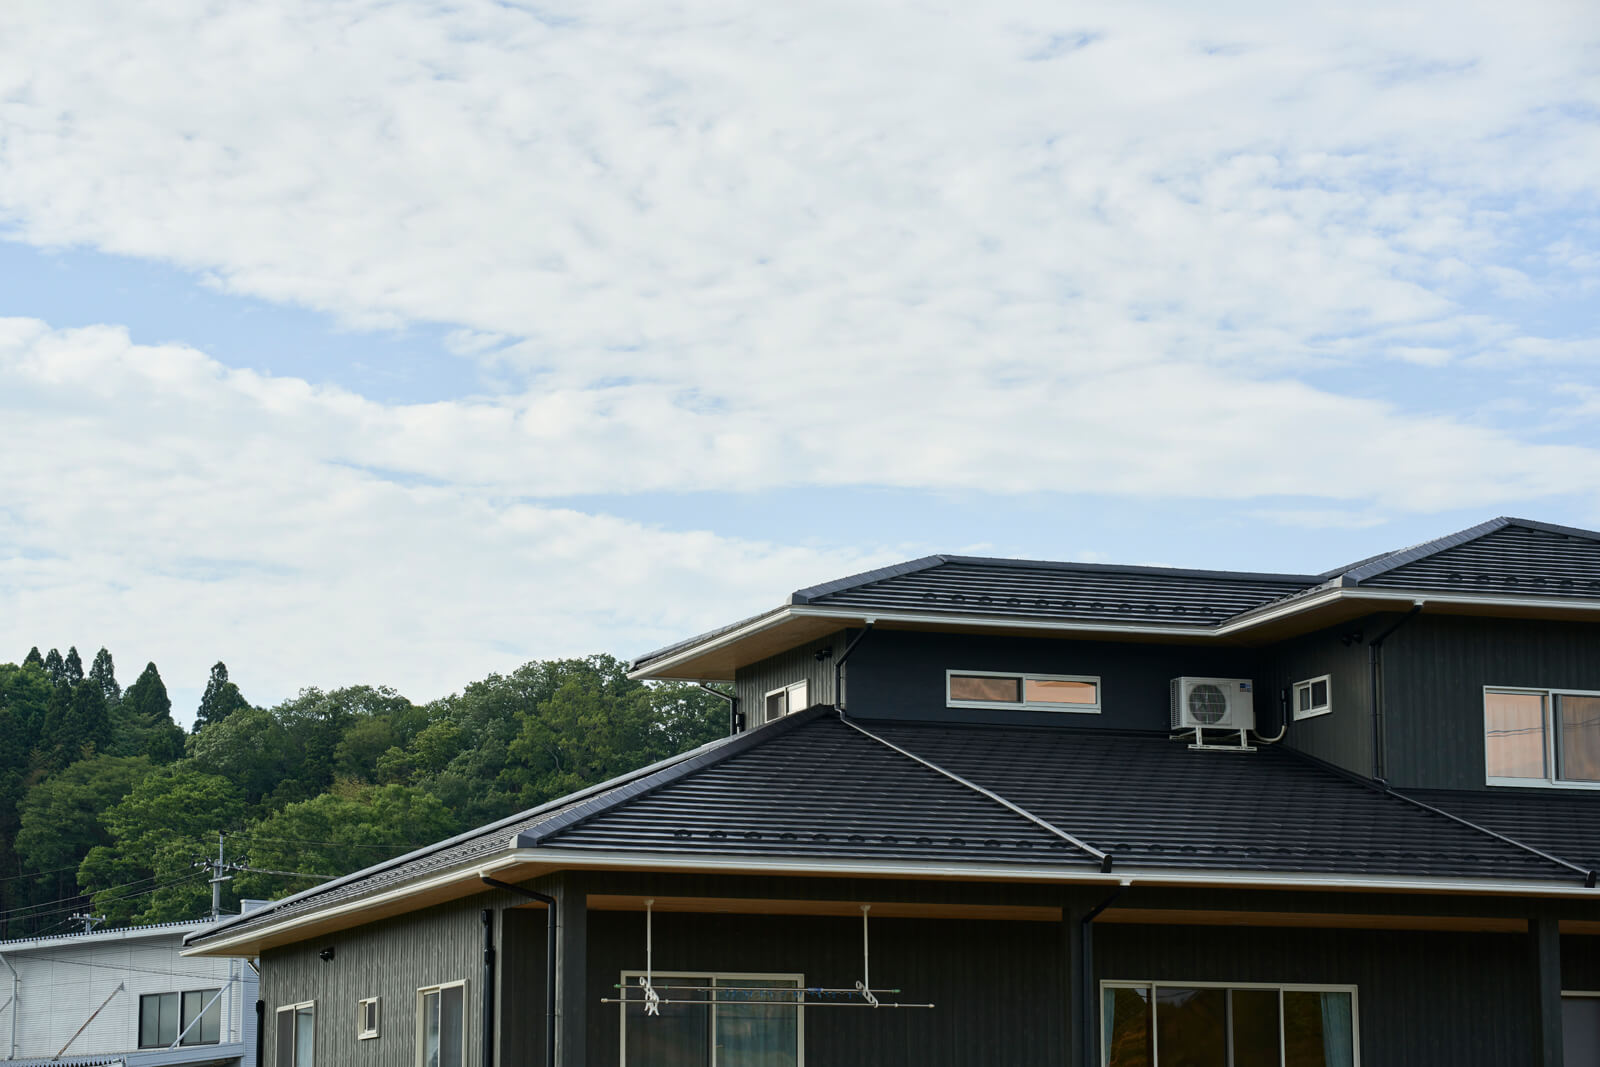 こだわりの振れ幅木の屋根。斉藤専務自身、初めて取り組んだそうで「自慢できる家になりました」と胸を張る